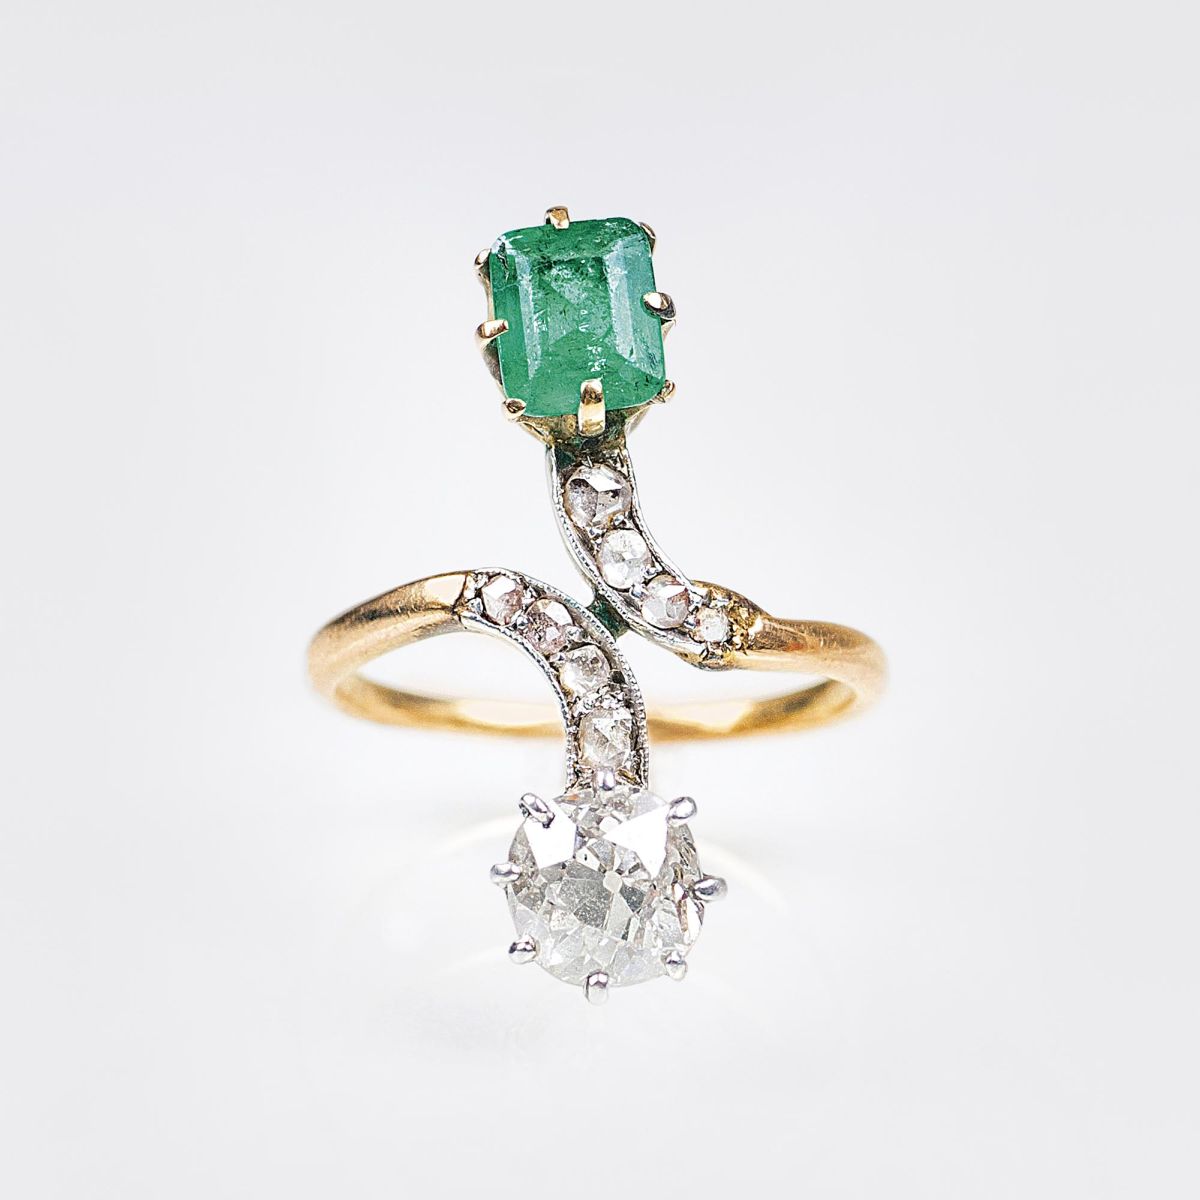 An Art Nouveau Diamond Emerald Ring